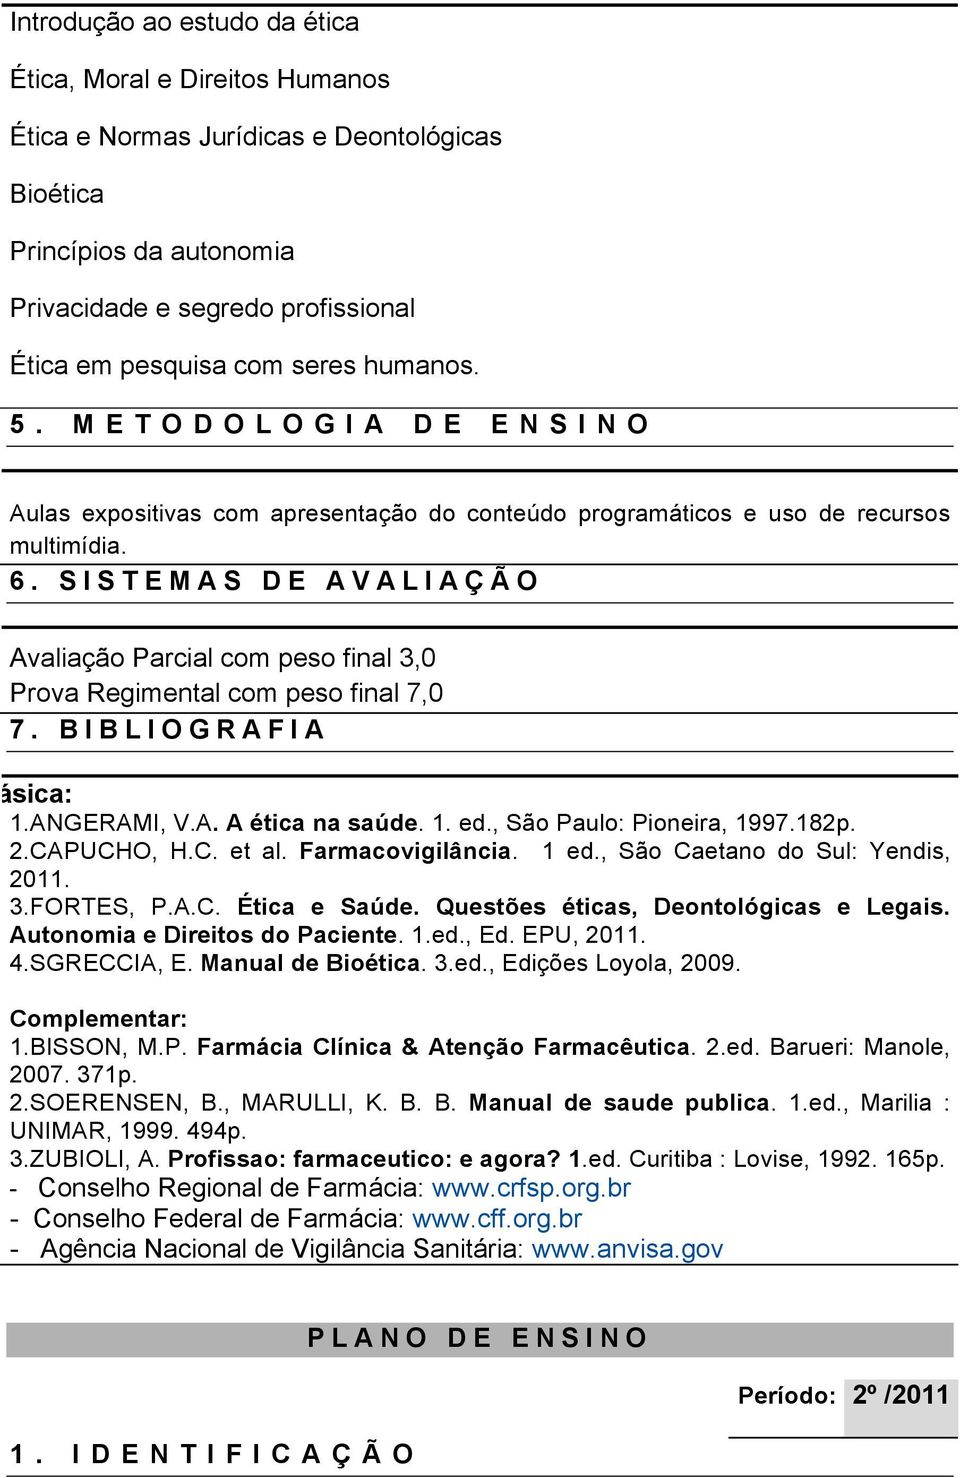 SISTEMAS DE AVALIAÇÃO Avaliação Parcial com peso final 3,0 Prova Regimental com peso final 7,0 7. BIBLIOGRAFIA Básica: 1.ANGERAMI, V.A. A ética na saúde. 1. ed., São Paulo: Pioneira, 1997.182p. 2.